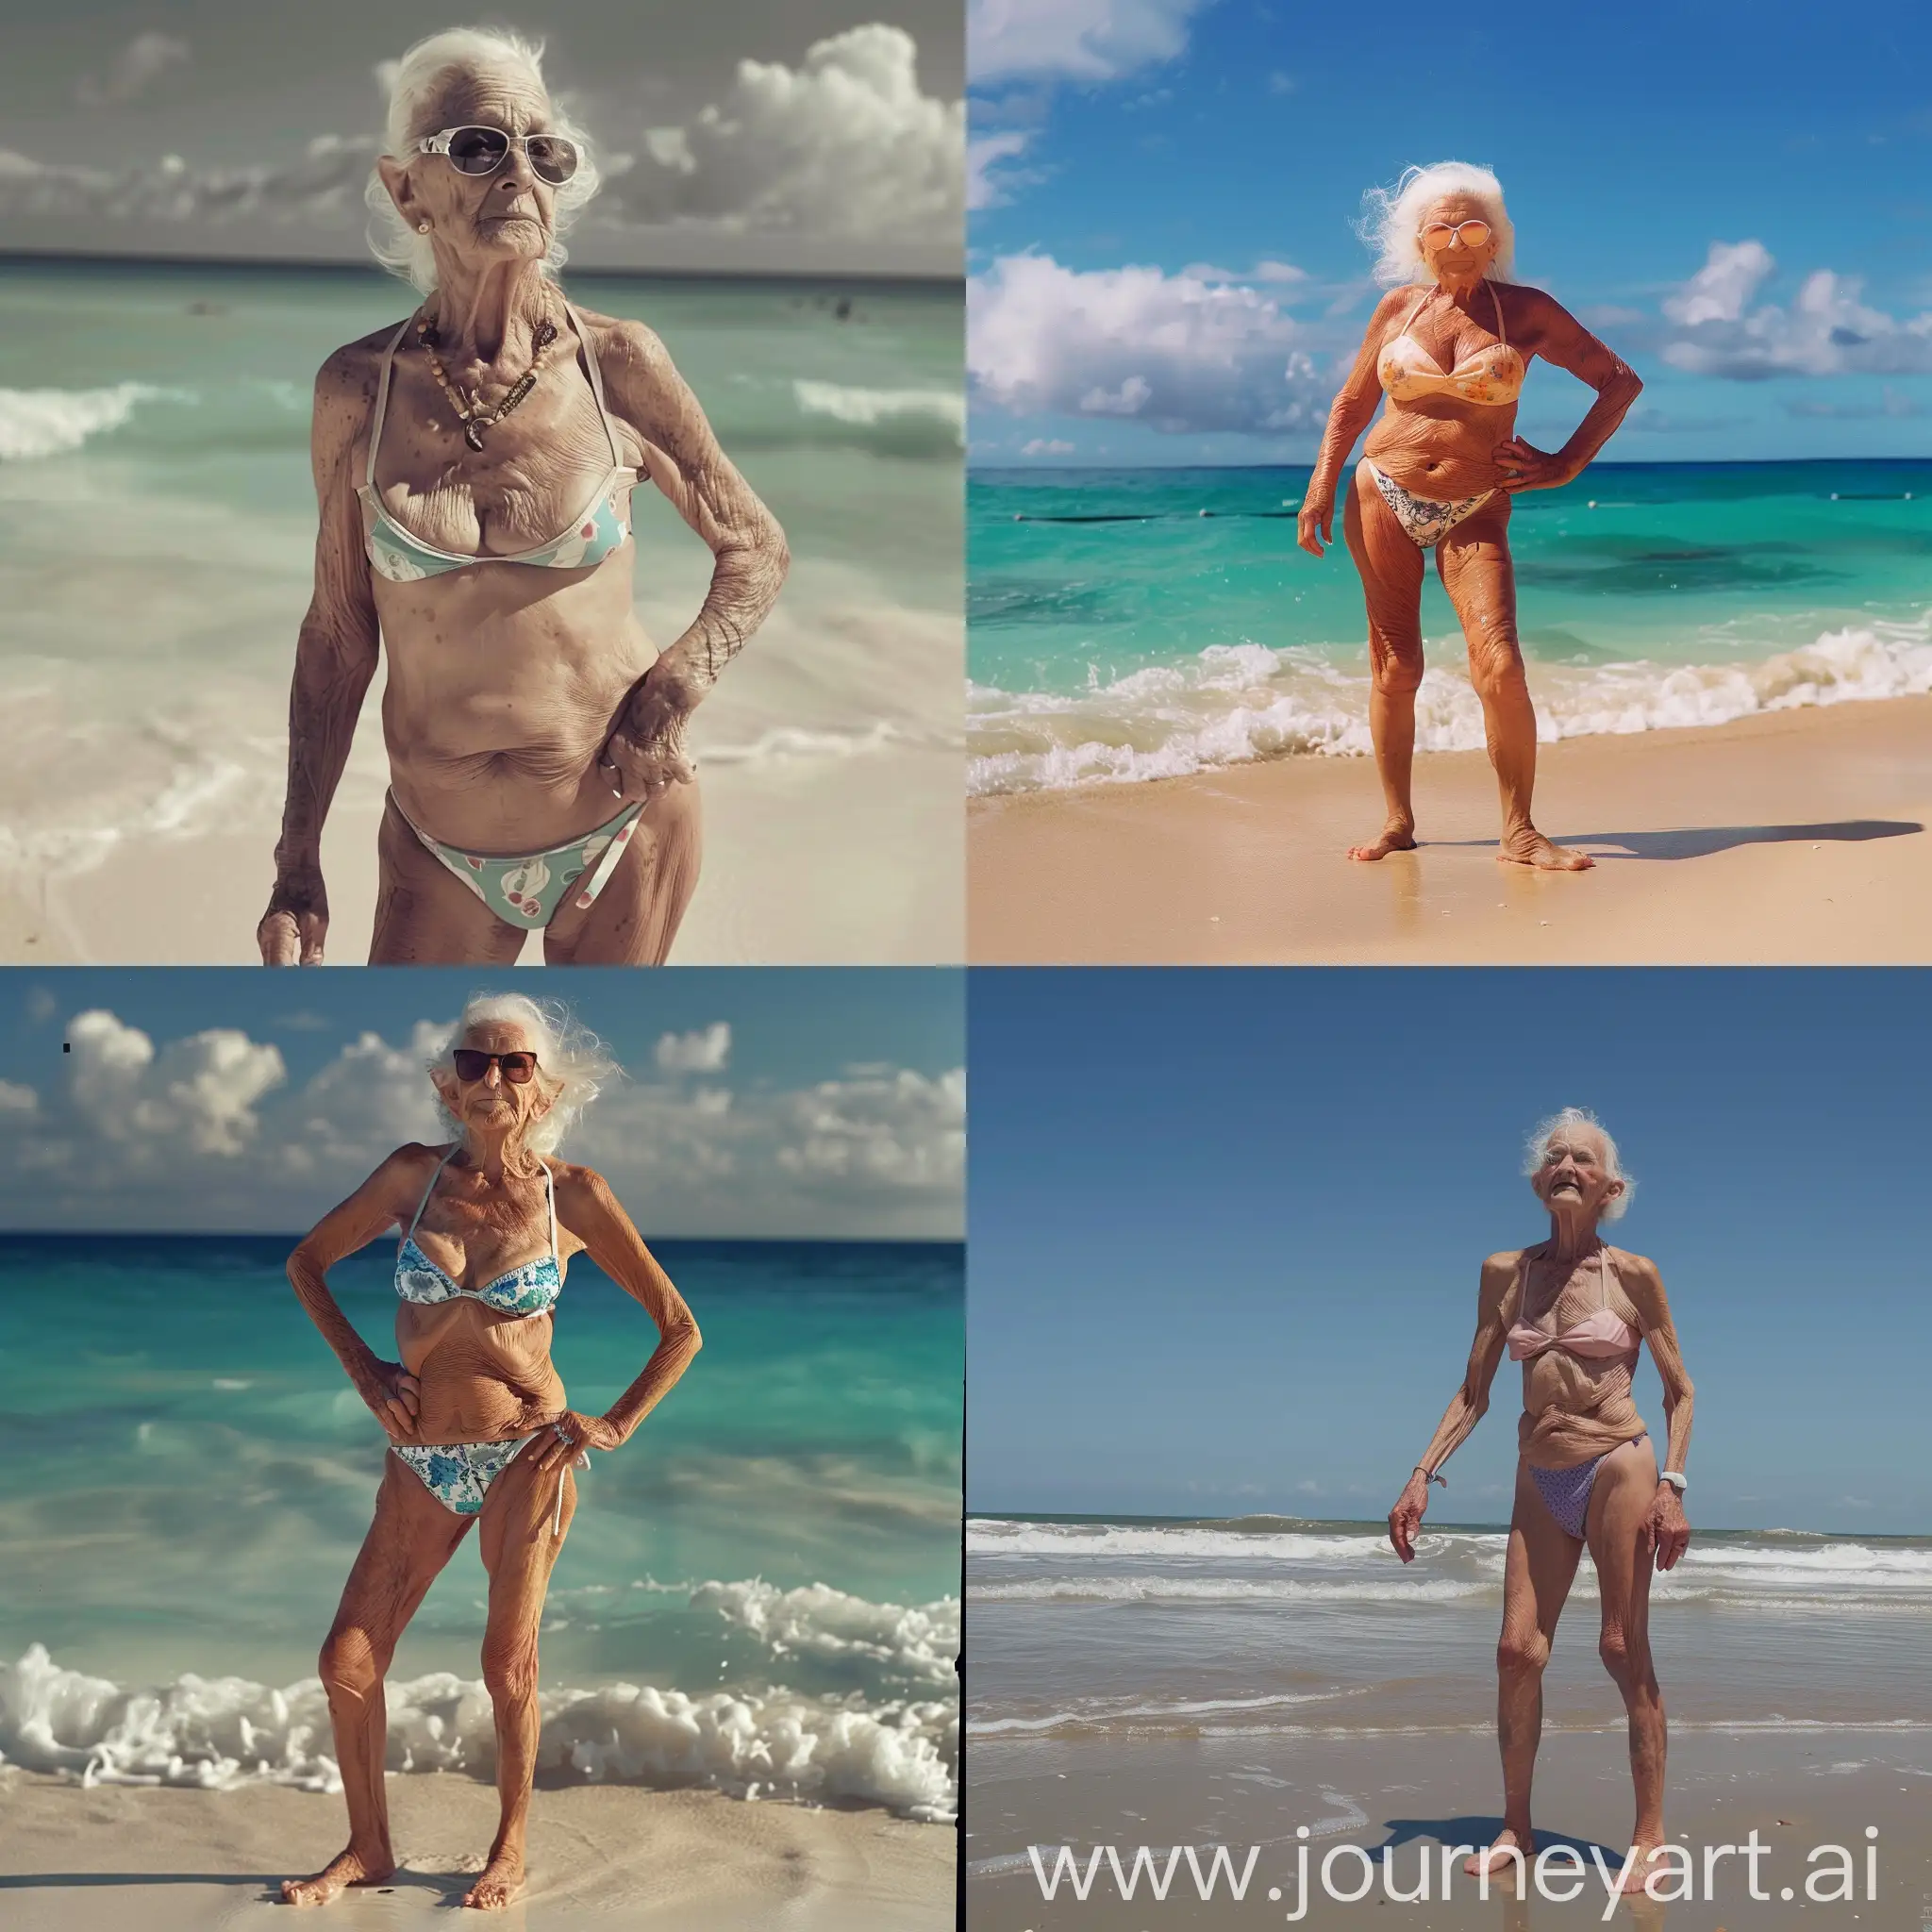 Je veux une vieille dame en bikini sur la plage